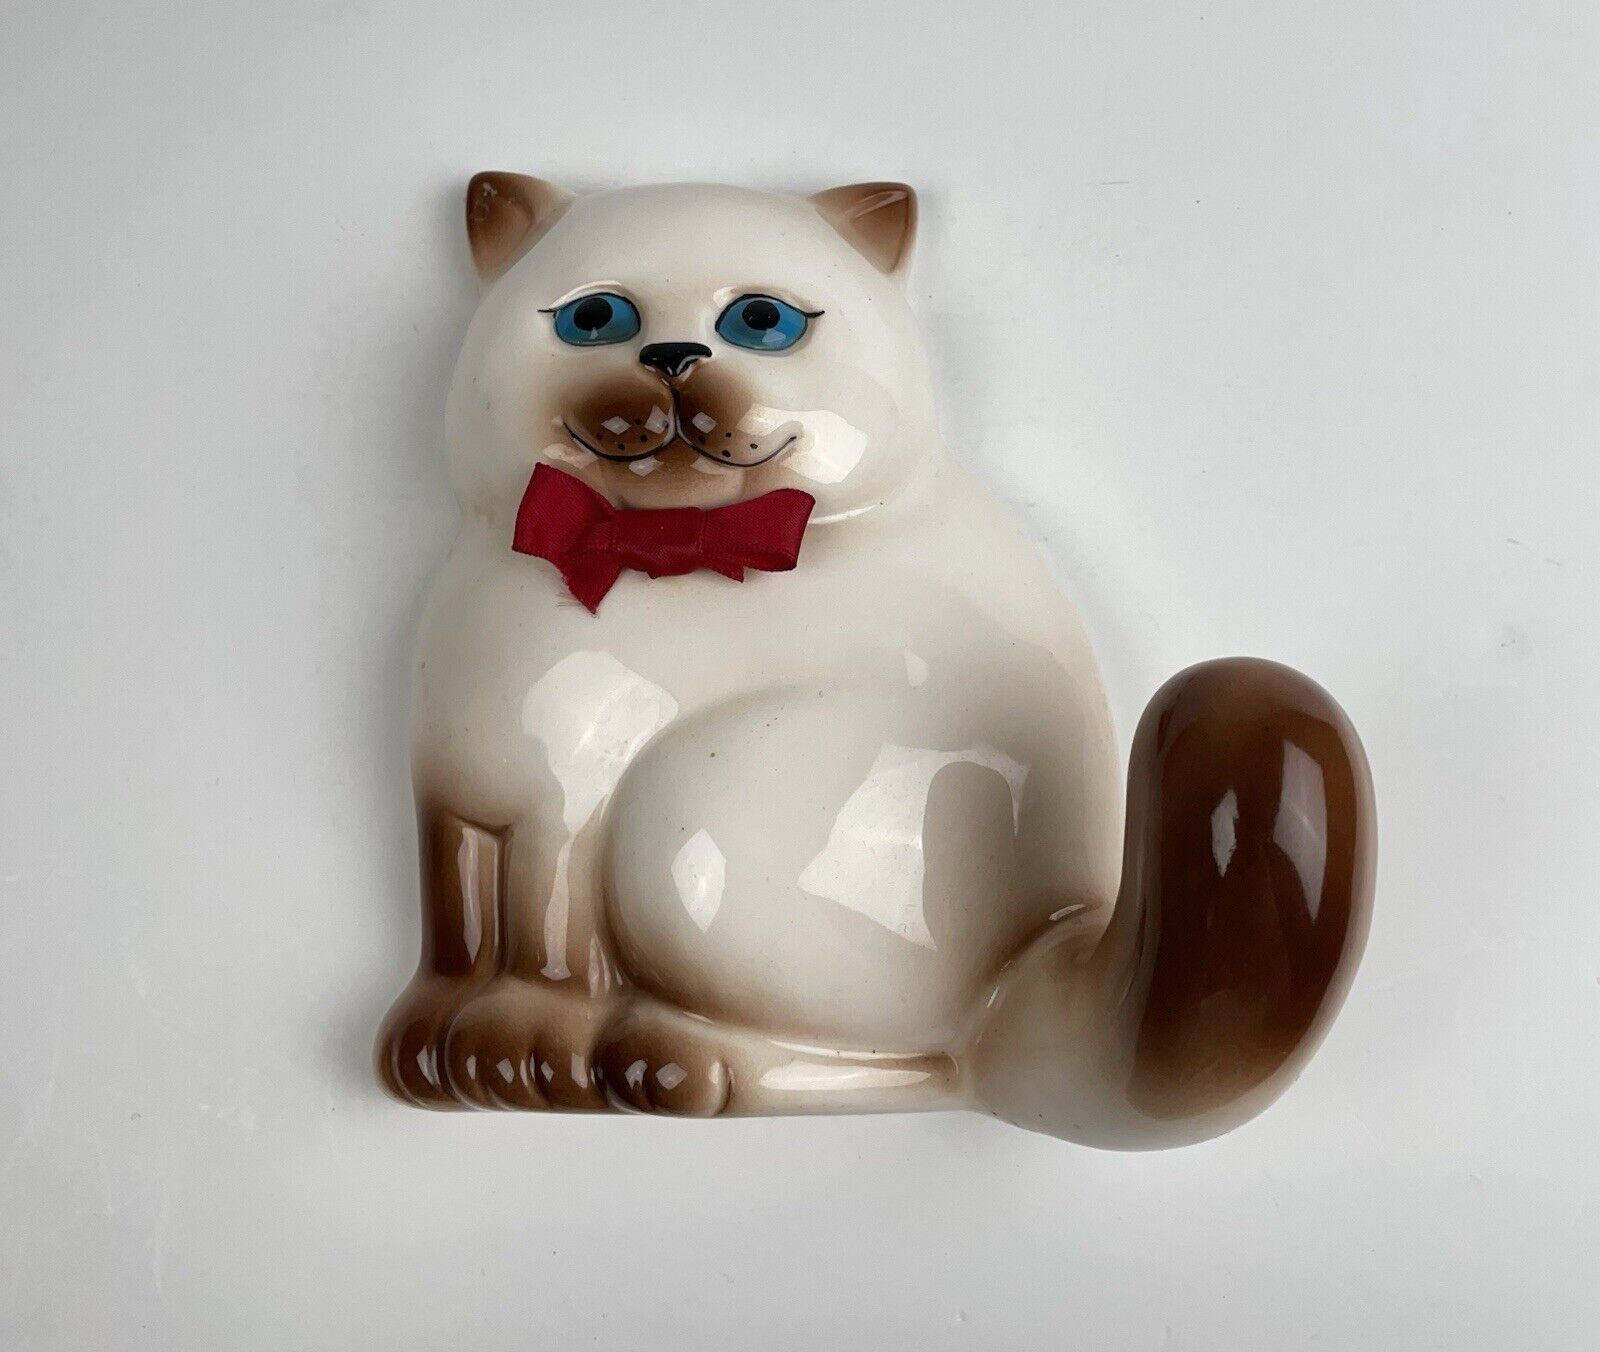 Vintage Wall Hanging Cat Figure Ceramic MCM Kitsch Kitten 5.5”